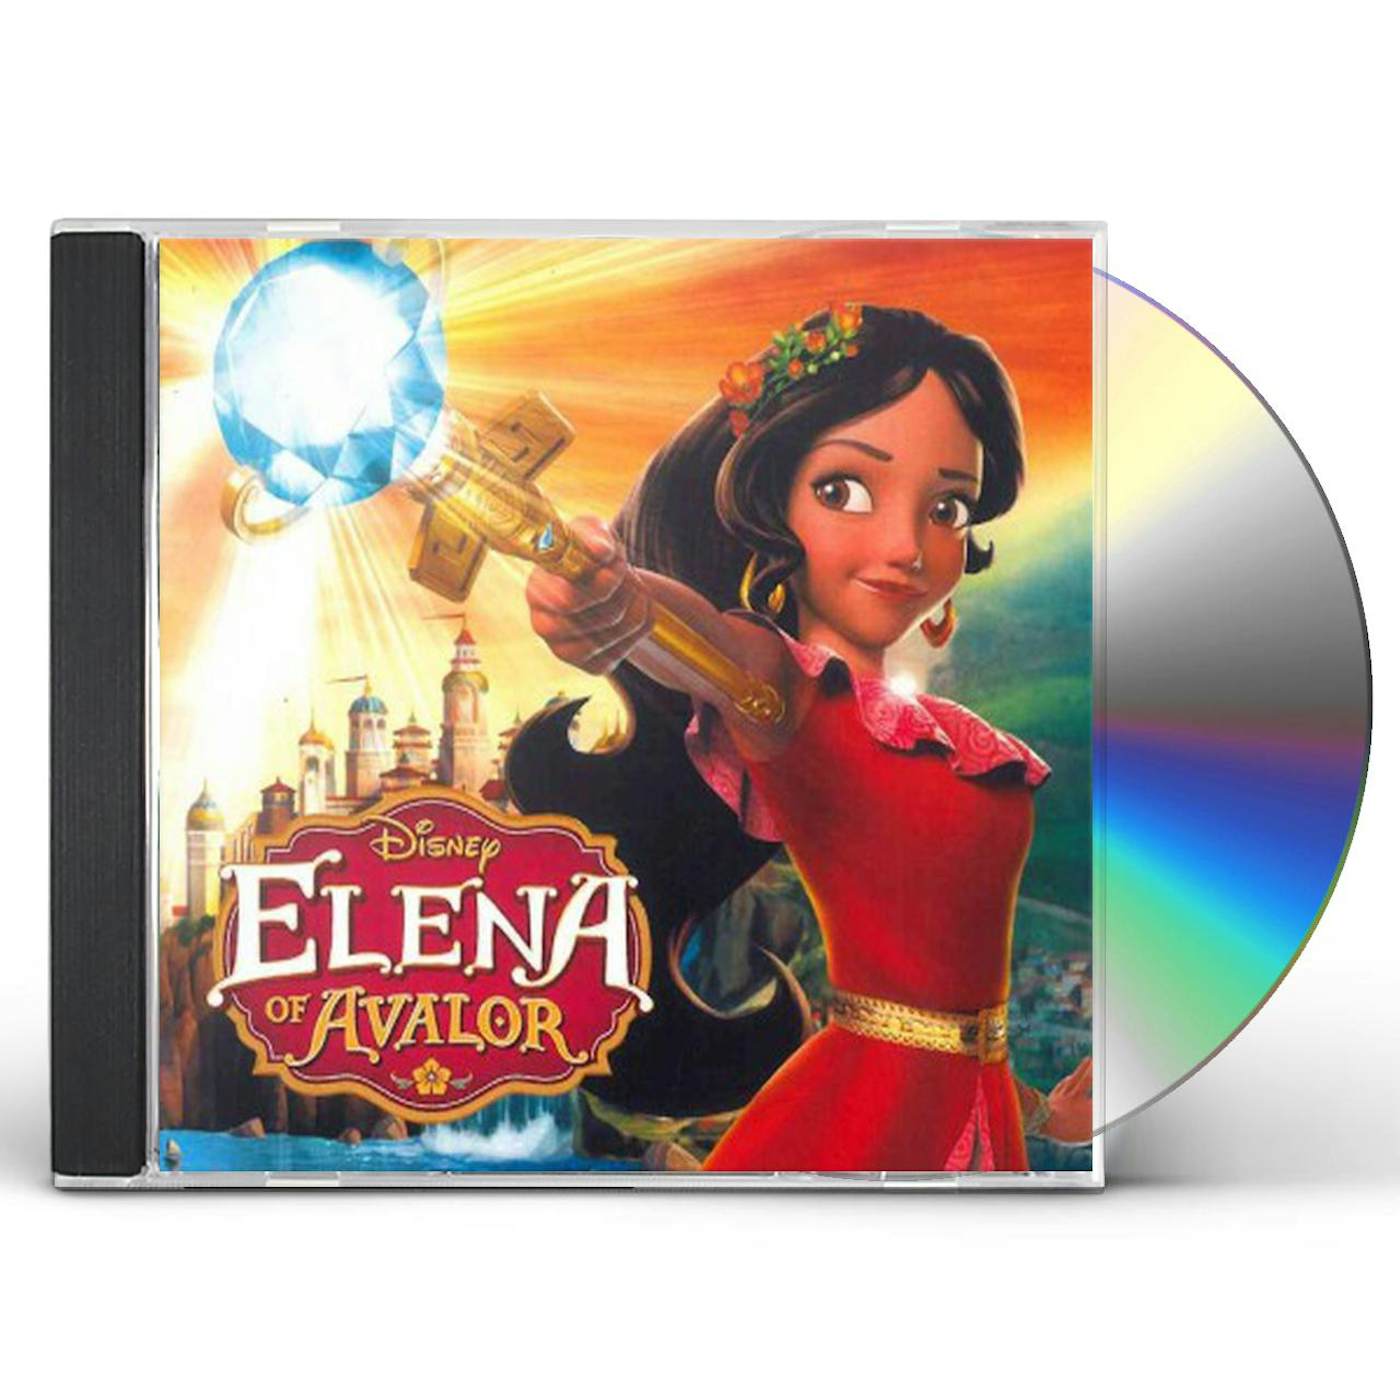 Elena of Valor O.S.T. ELENA OF AVALOR / Original Soundtrack CD